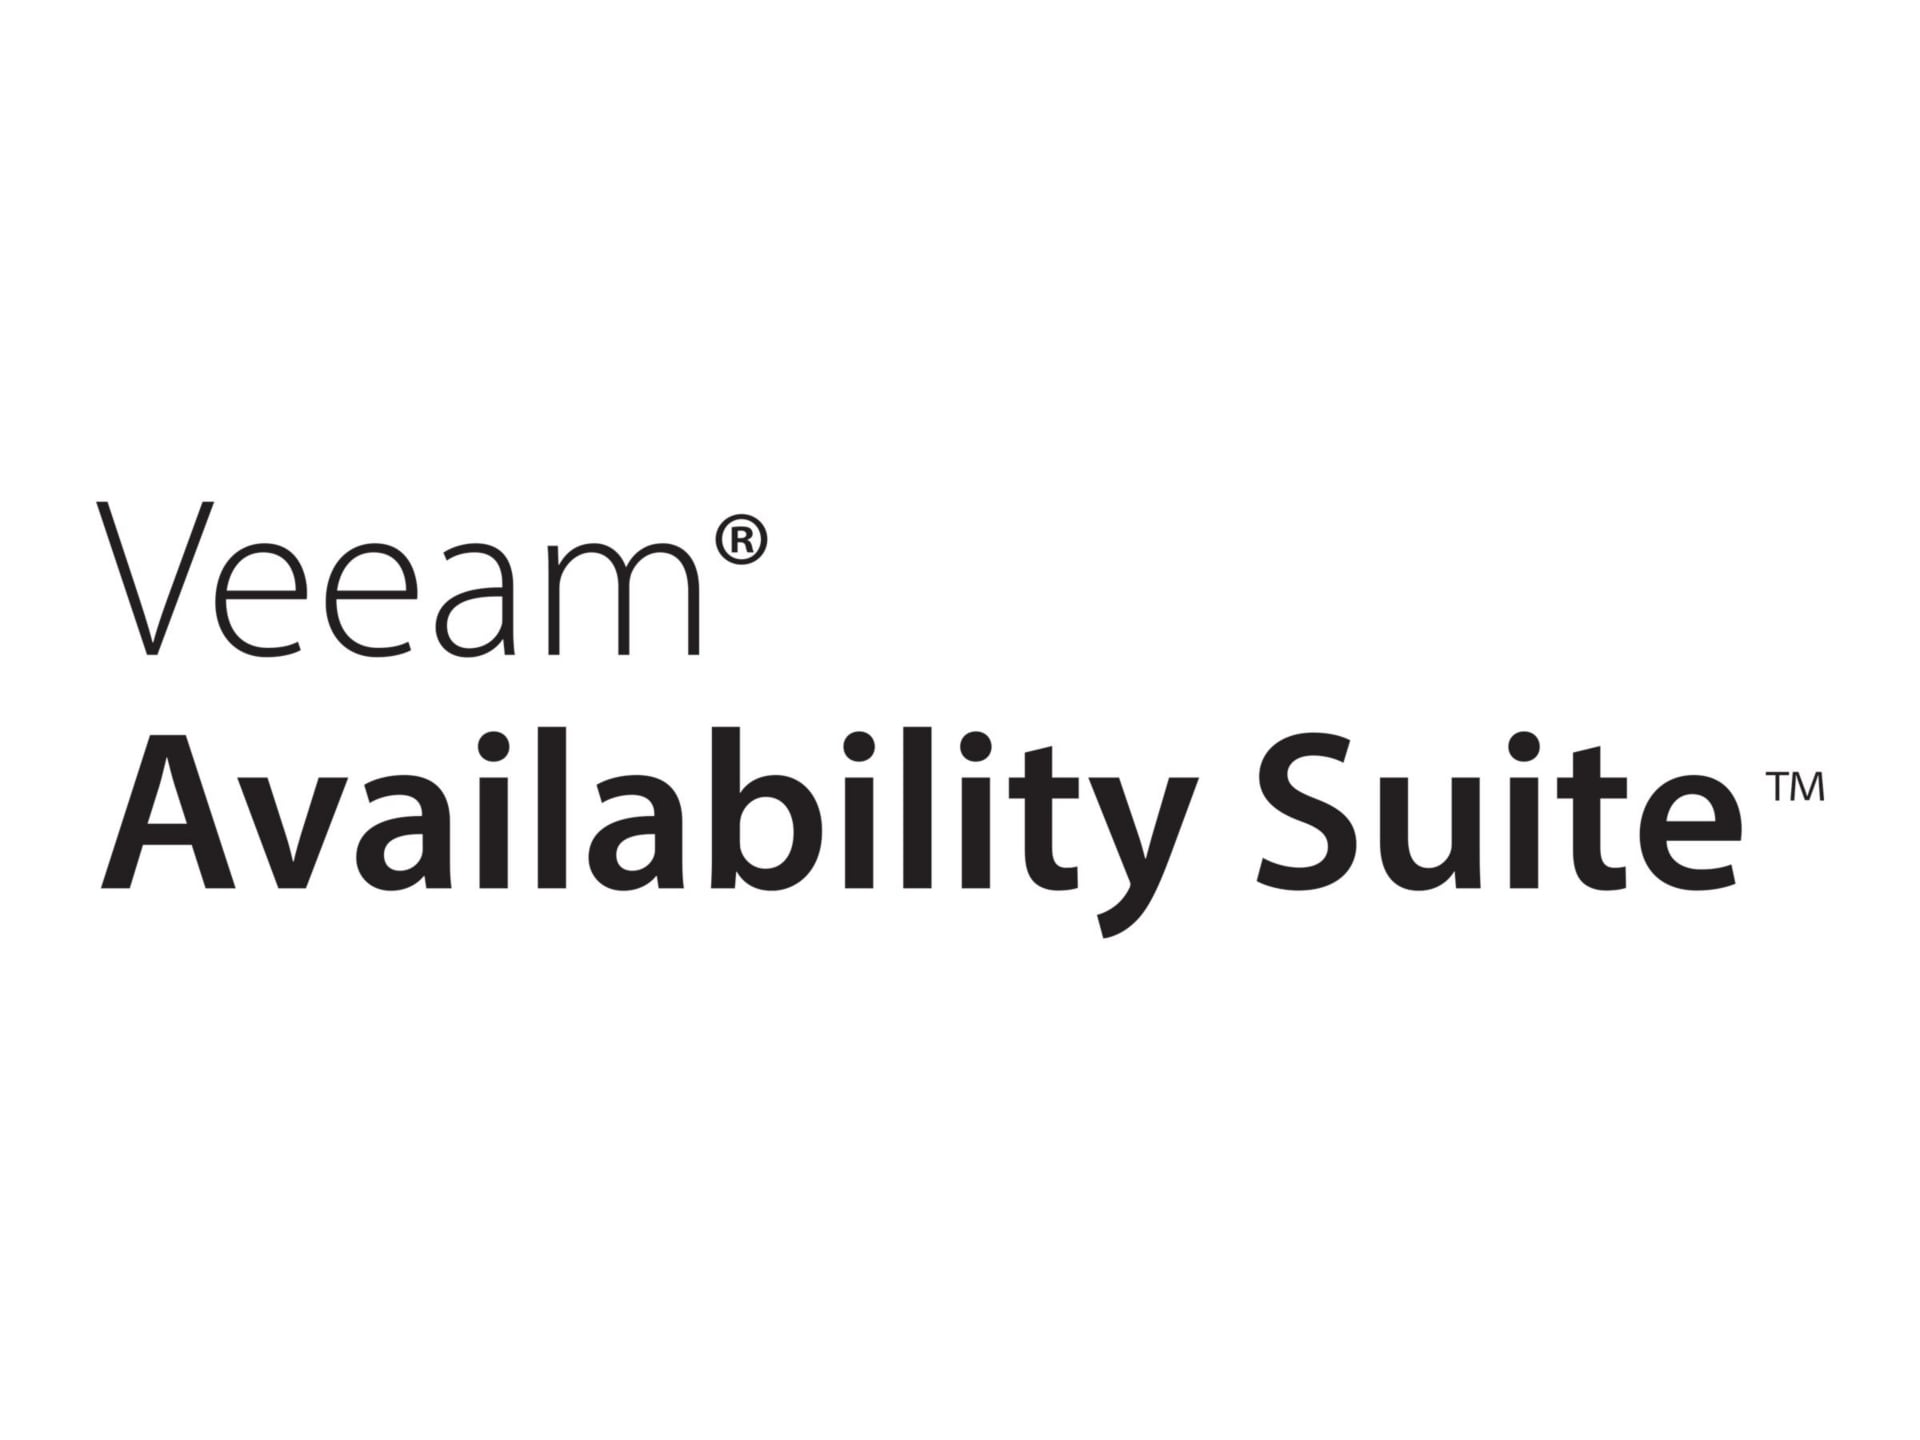 Veeam Availability Suite Enterprise - Upfront Billing License (1 month) + P